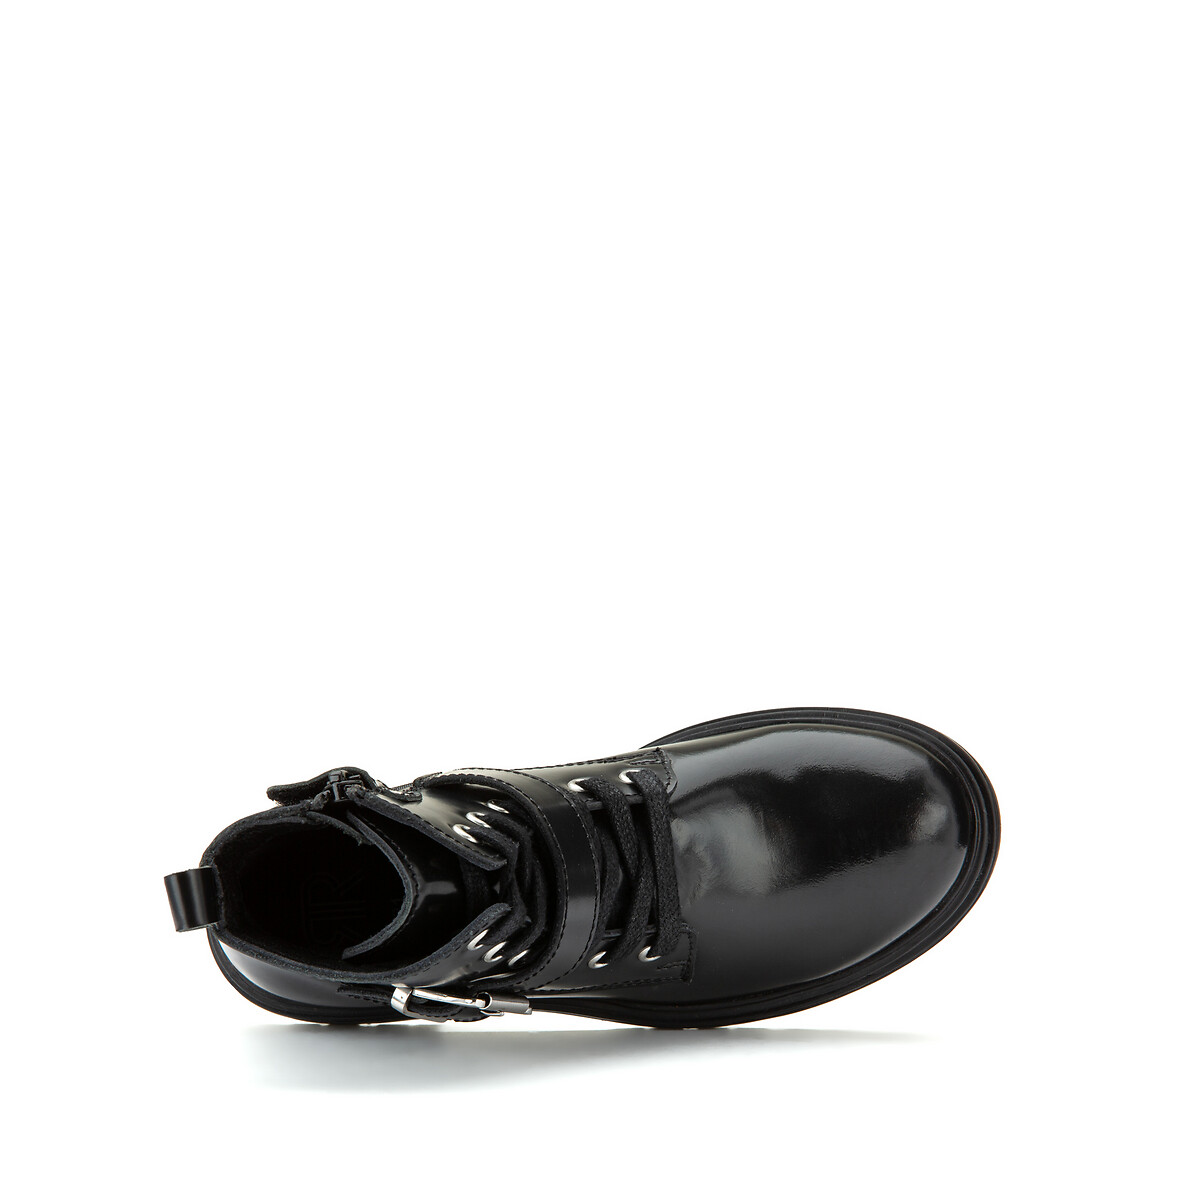 Ботинки LaRedoute Из кожи 28-38 31 черный, размер 31 - фото 4